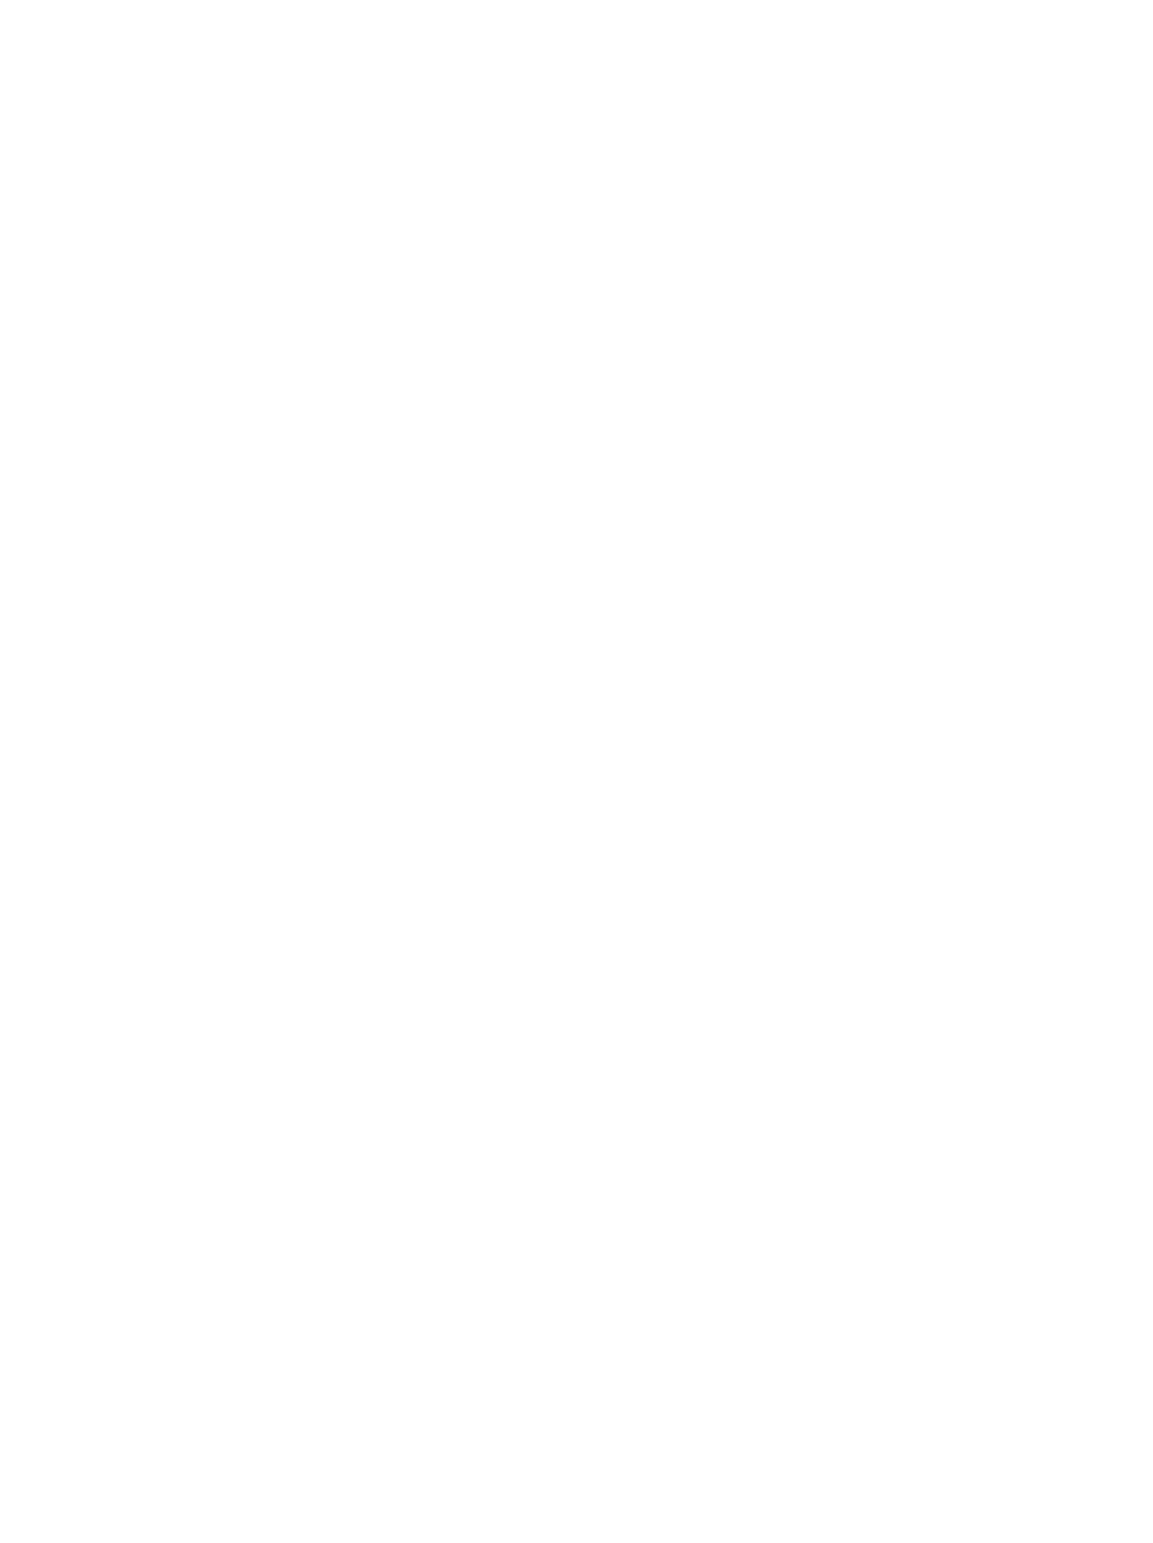 Hail Cement Company logo pour fonds sombres (PNG transparent)